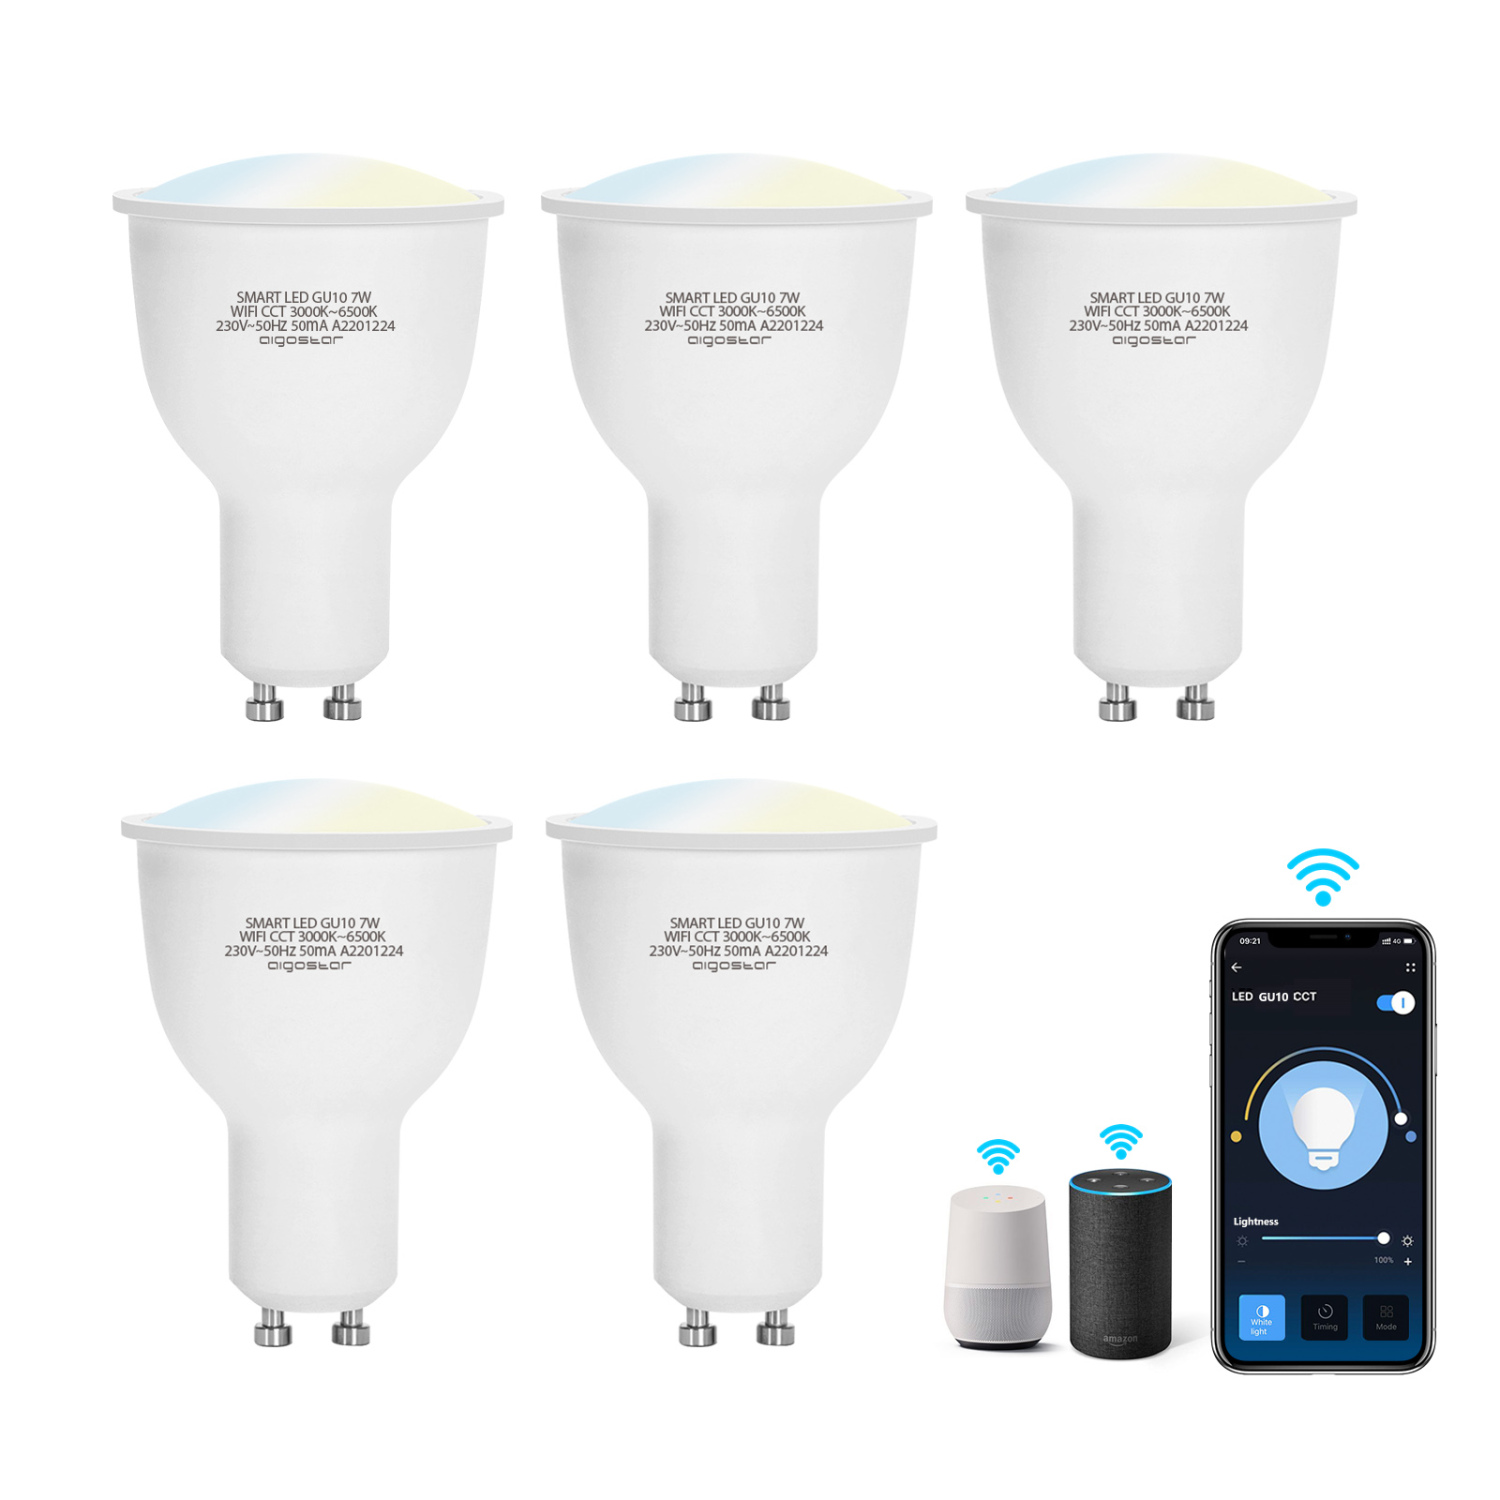 Aigostar Smart Lampen GU10 Wlan Alexa Glühbirnen Dimmbare Wlan+CCT, funktioniert mit Alexa und Google Home, 7W Smarte Glühbirne, 450 lm, 3000K-6500K, Sprachsteuerung, 2.4GHz (5 Packs)